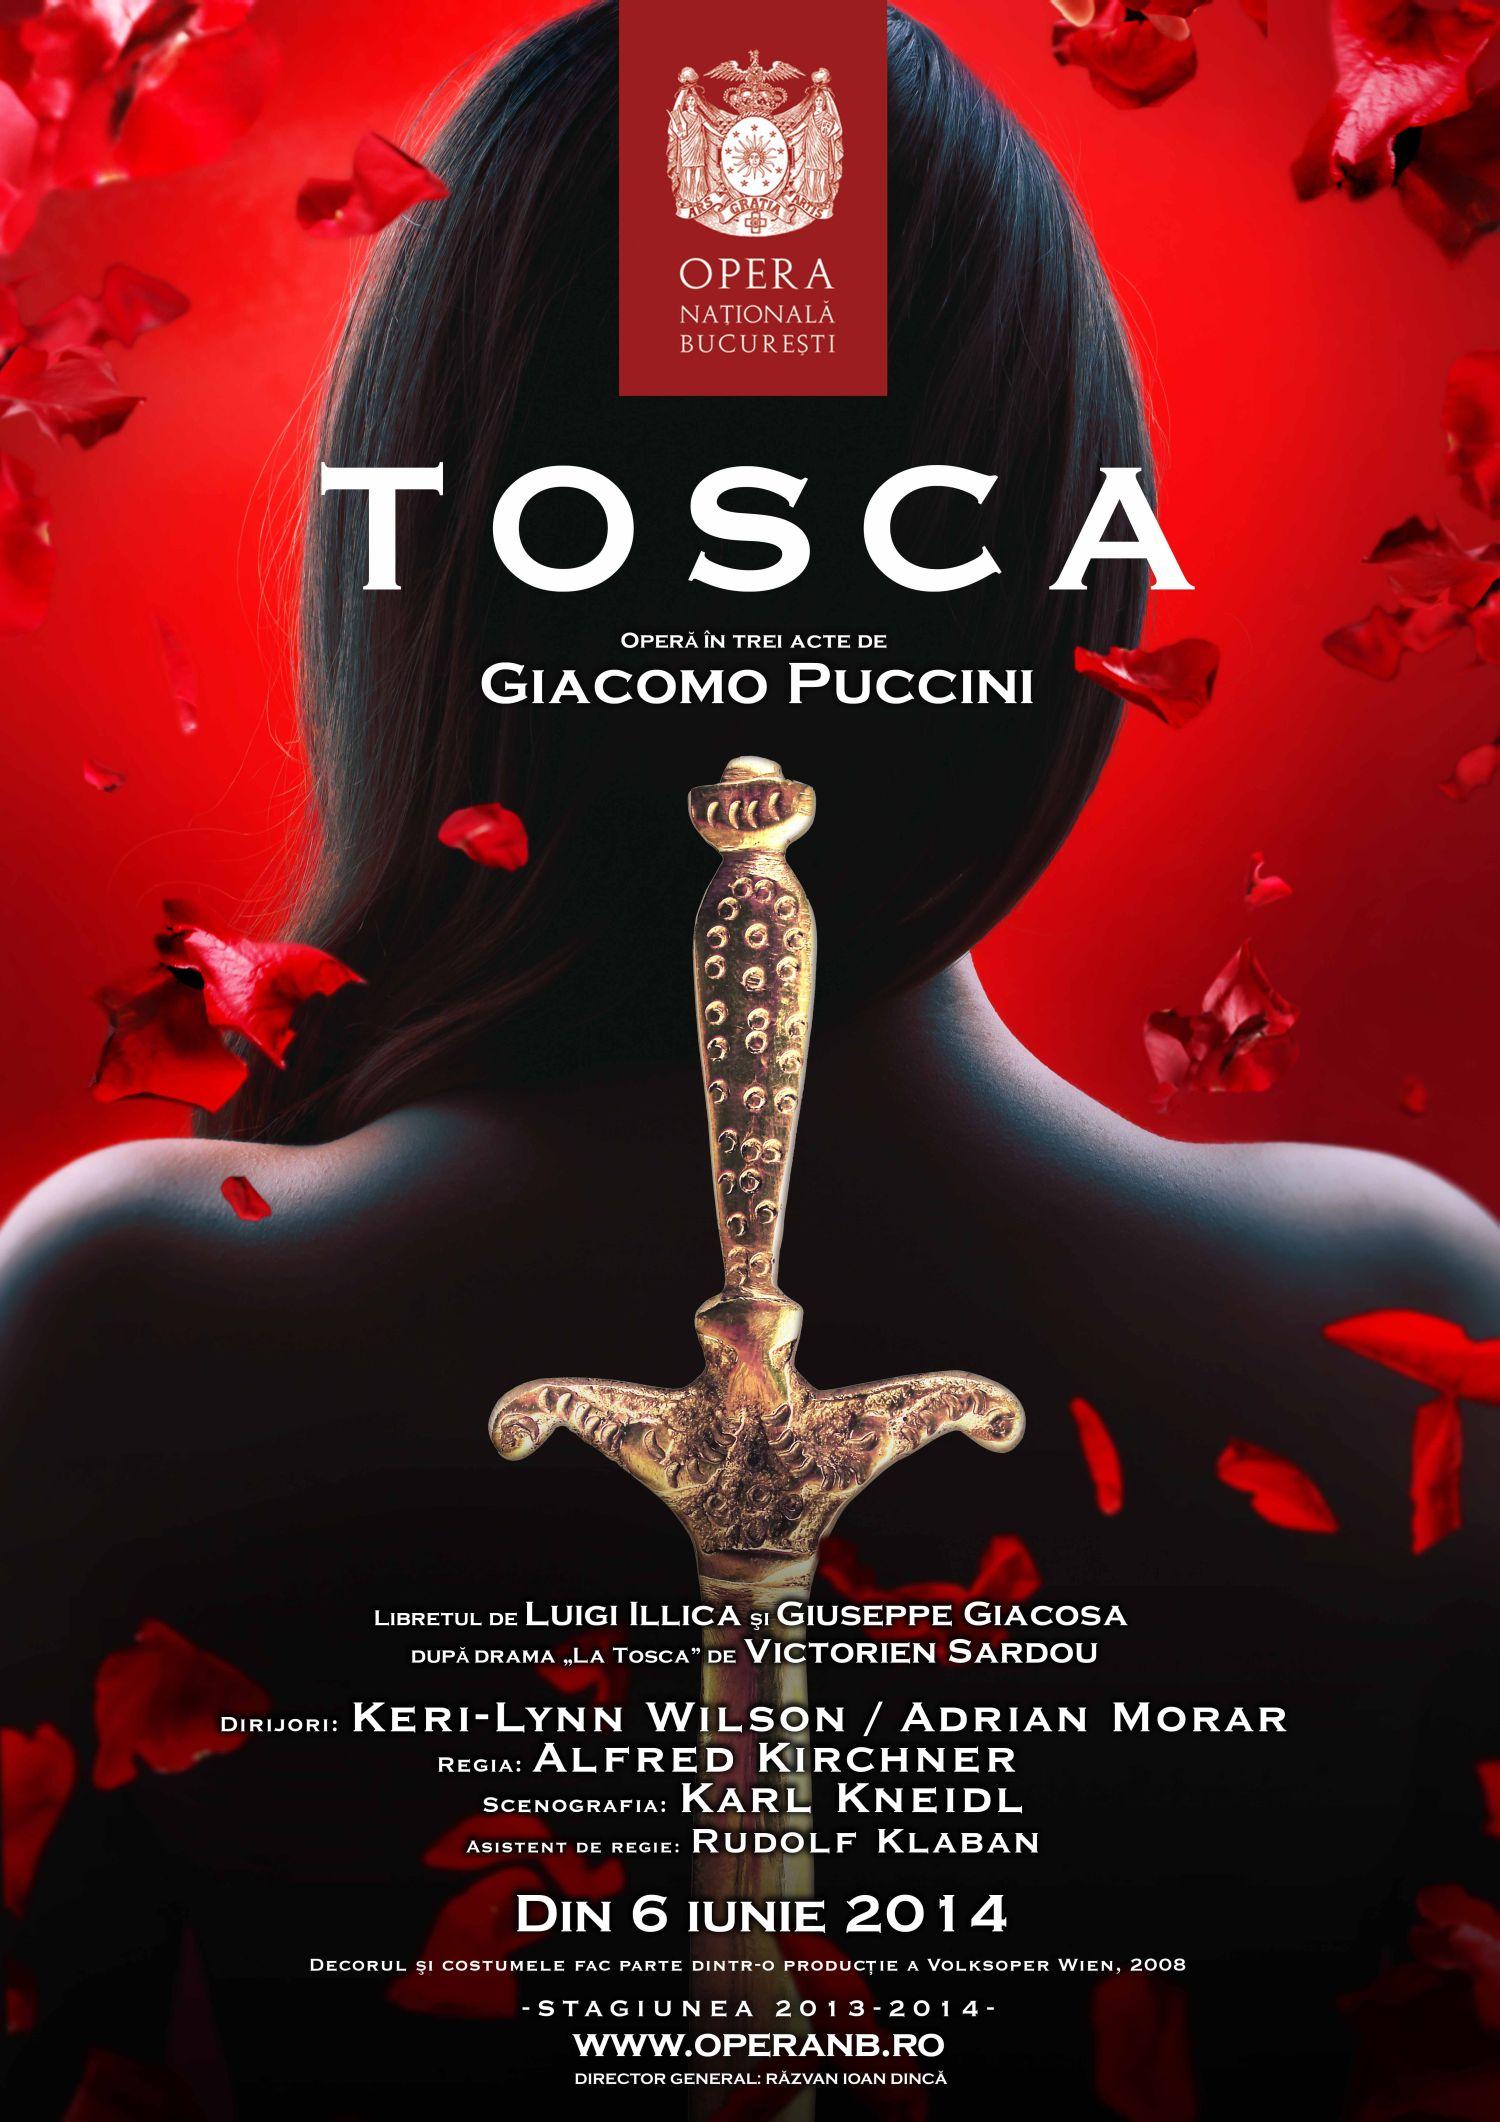 PREMIERĂ! TOSCA de Giacomo Puccini la Opera Naţională Bucureşti